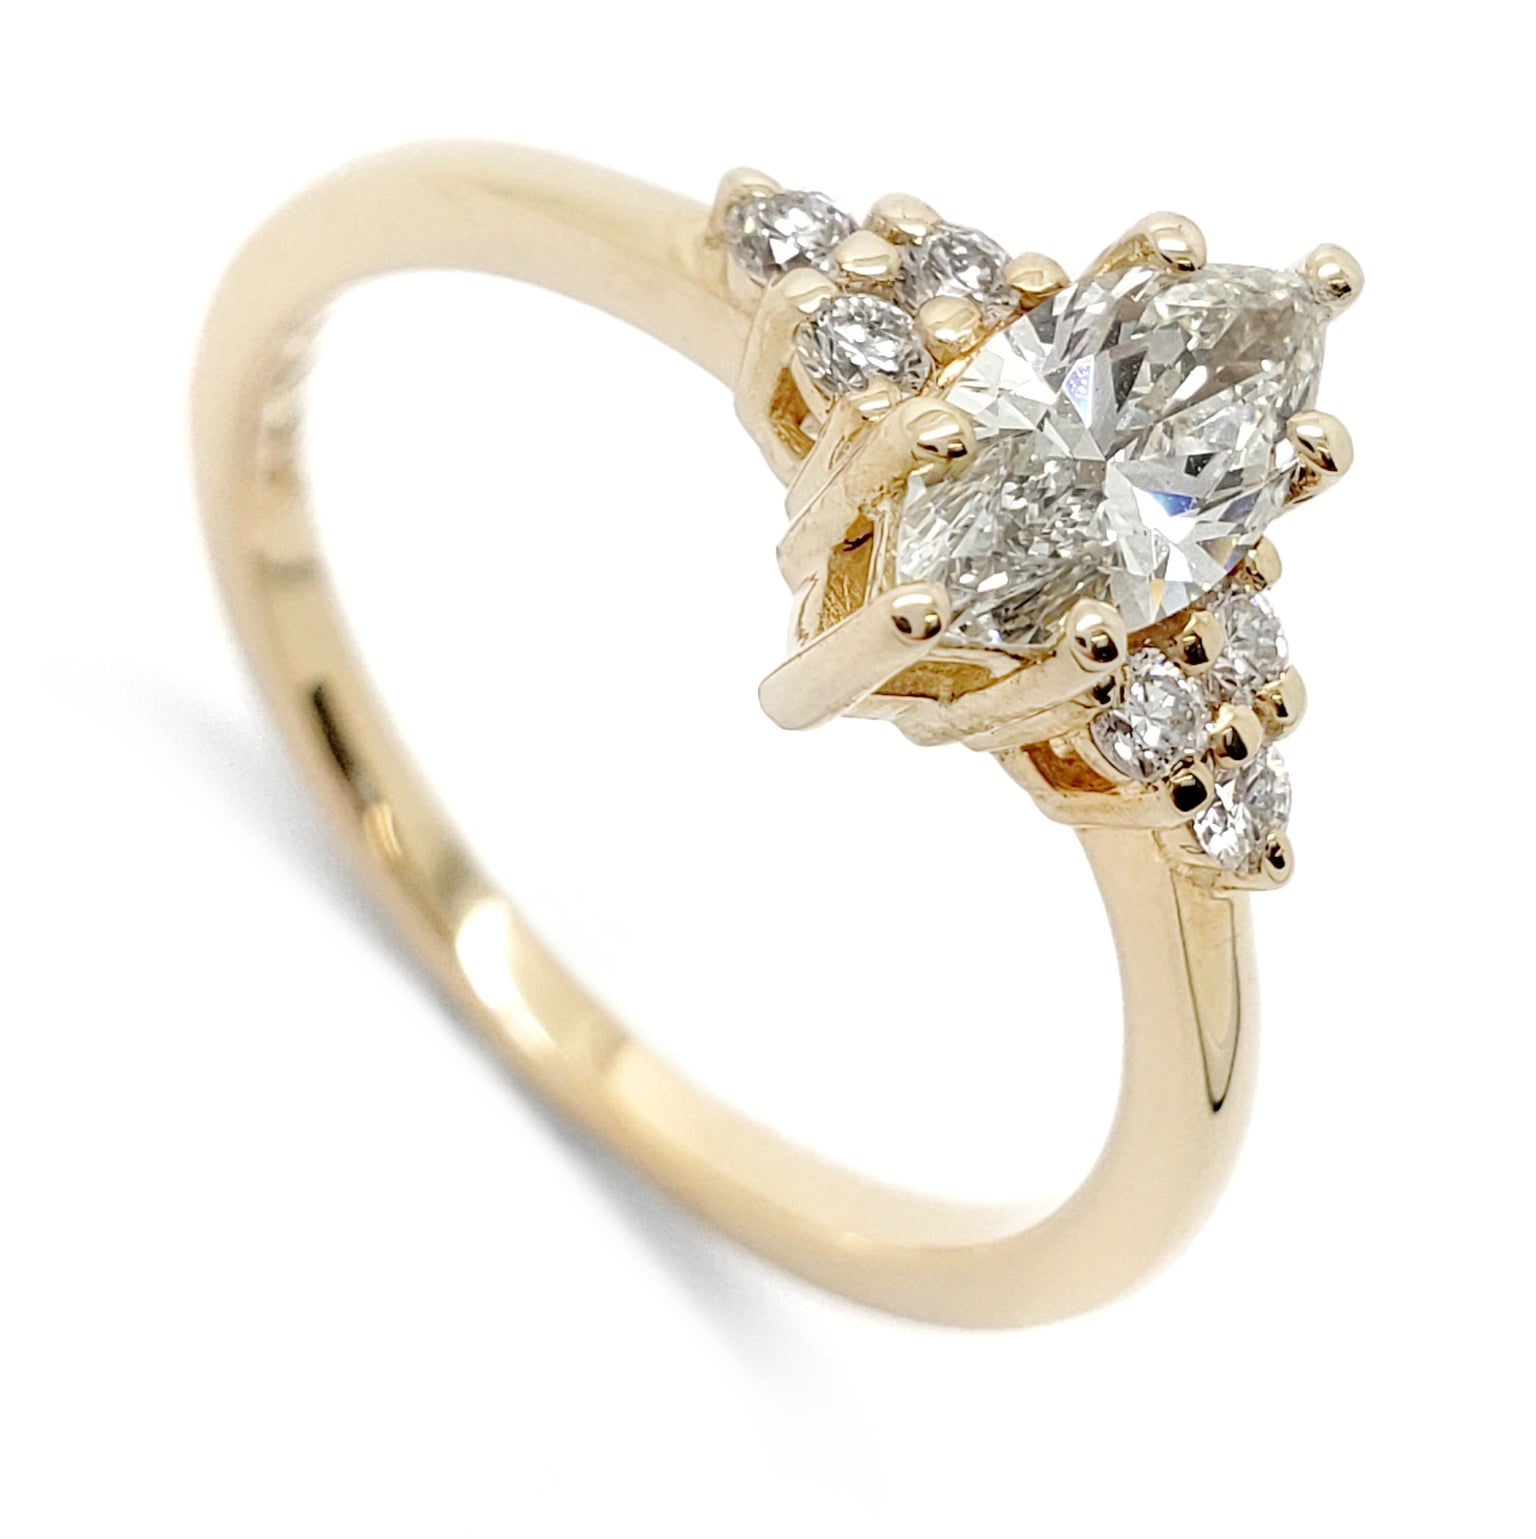 Era Design | Unique Engagement Rings & Custom Wedding Rings | Canada